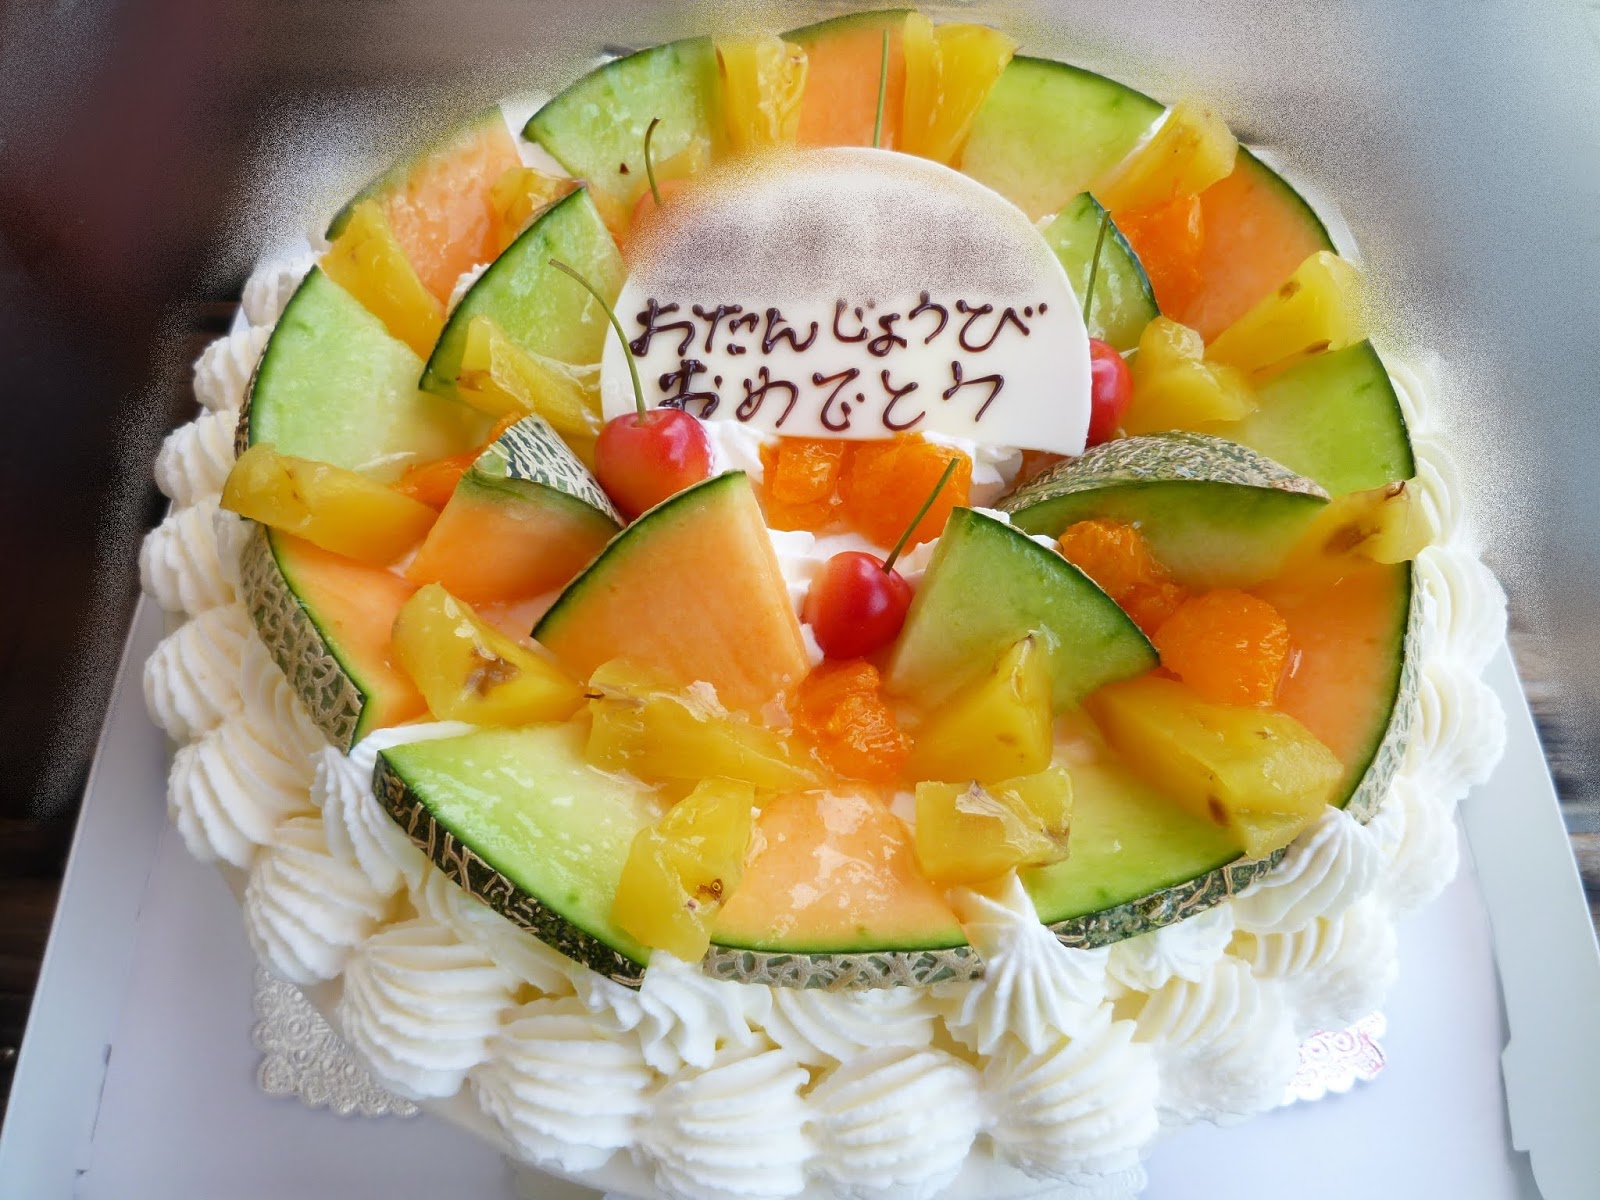 神奈川県小田原市中里のケーキ屋フロマージュのブログ 8号の生クリームデコレーションケーキ